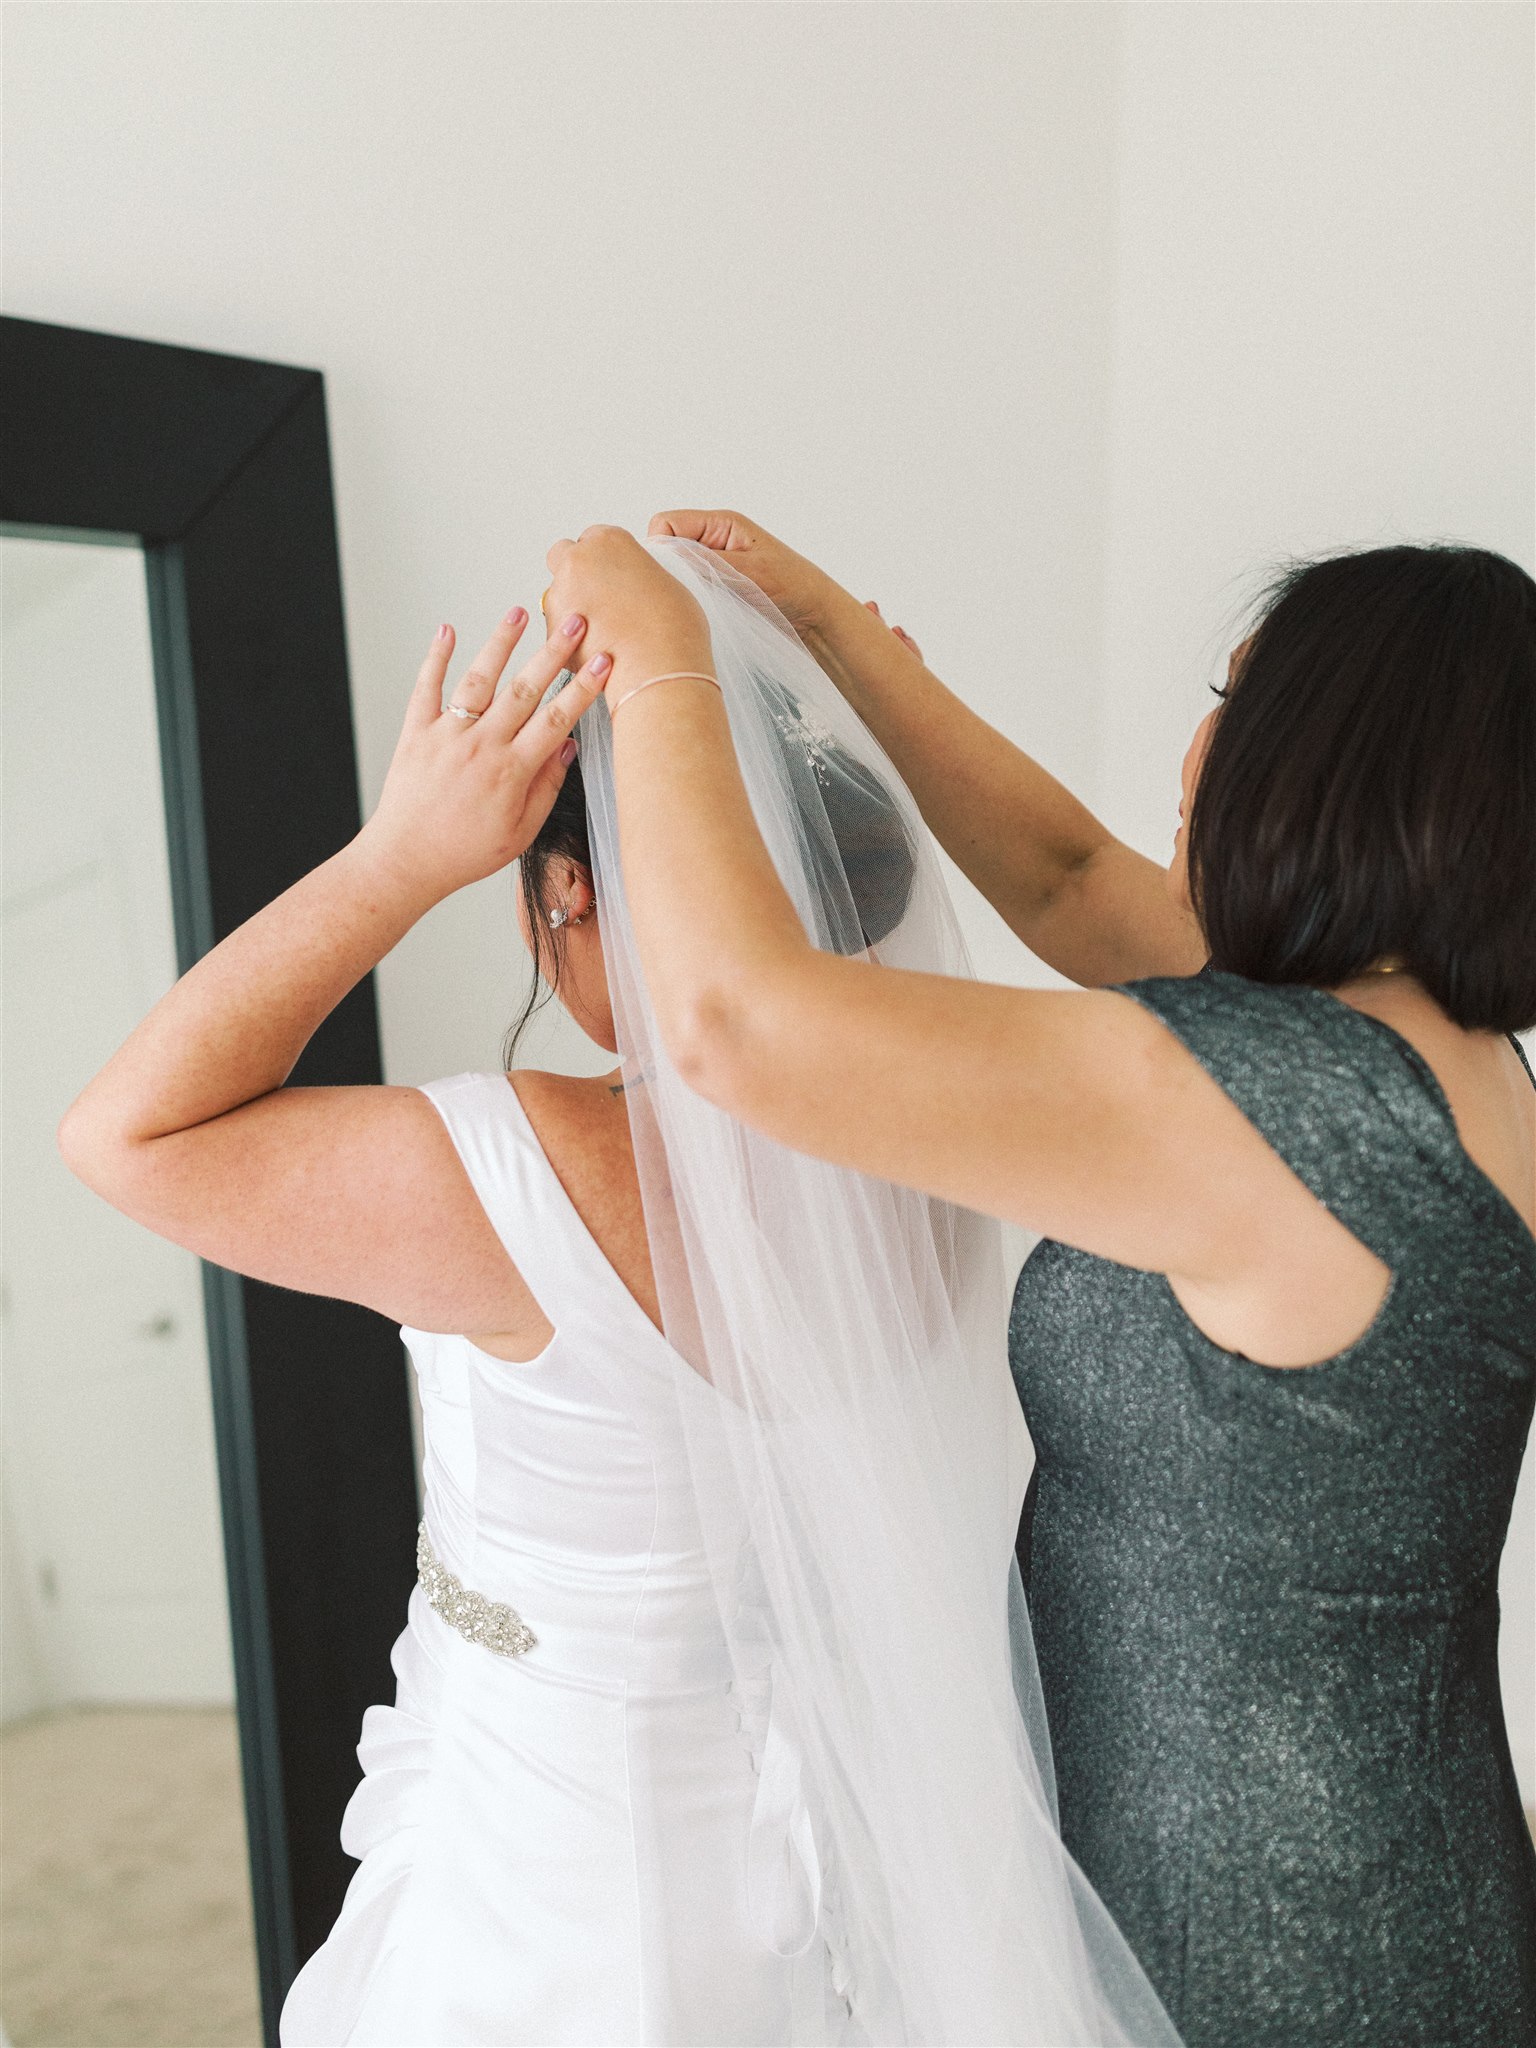 mother of bride helps adjust veil for bride